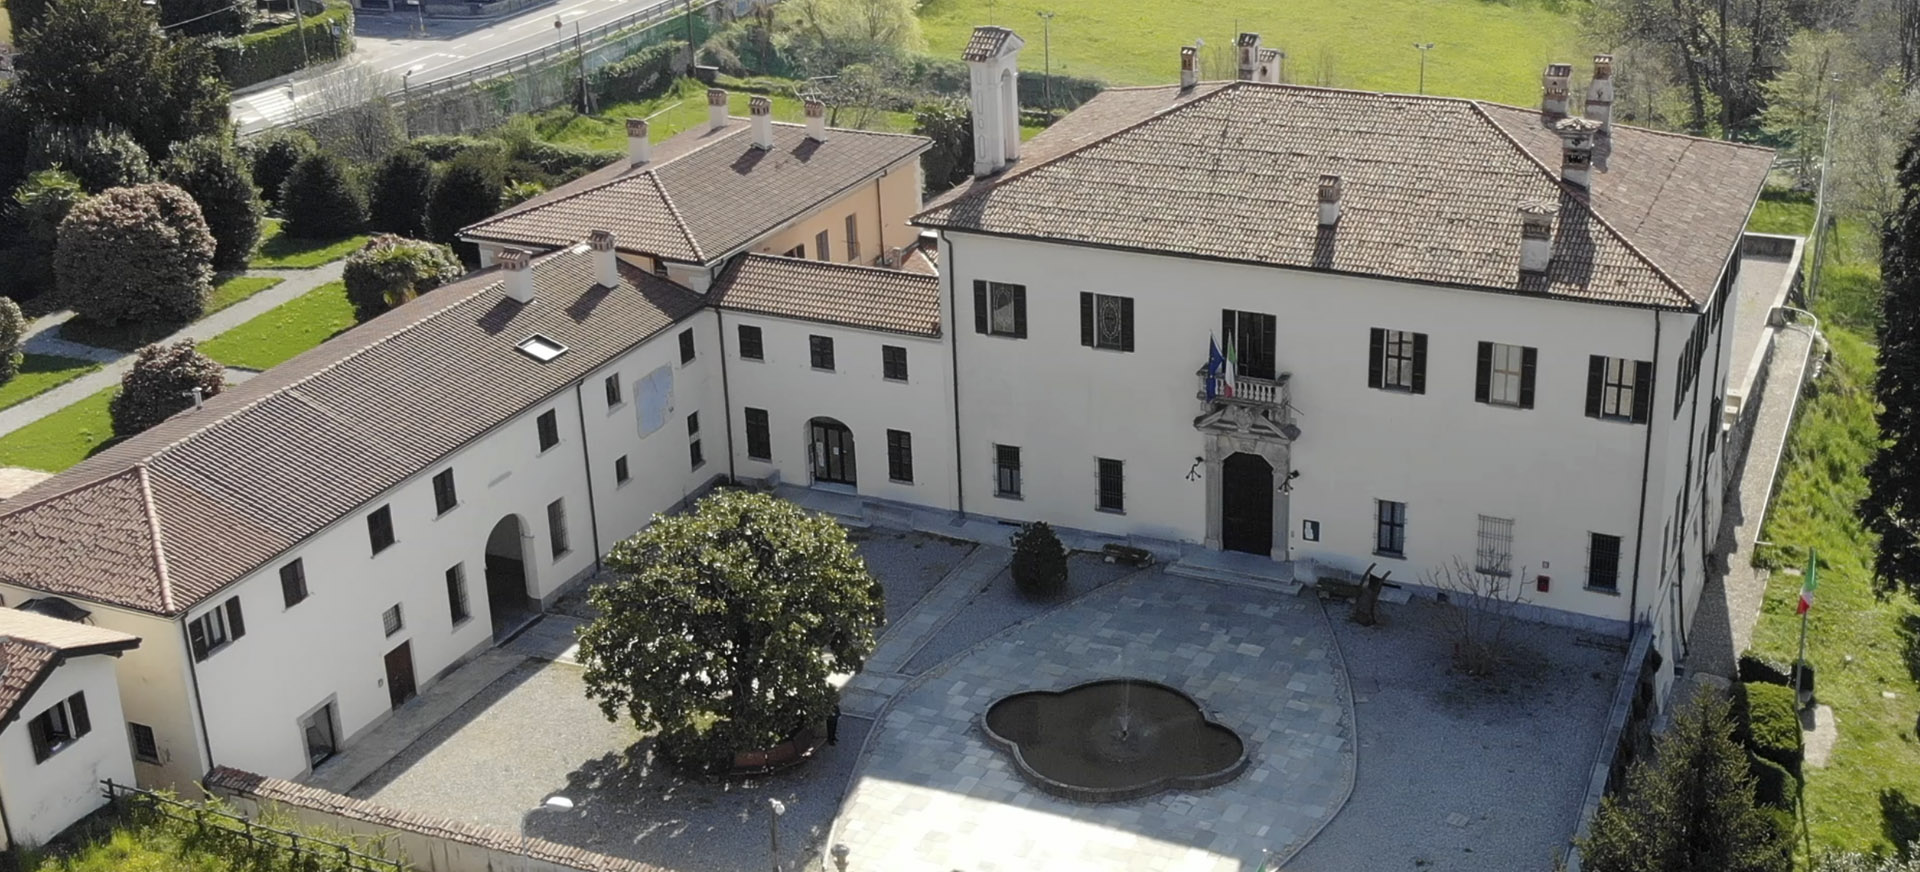 Villa Imbonati dall'alto